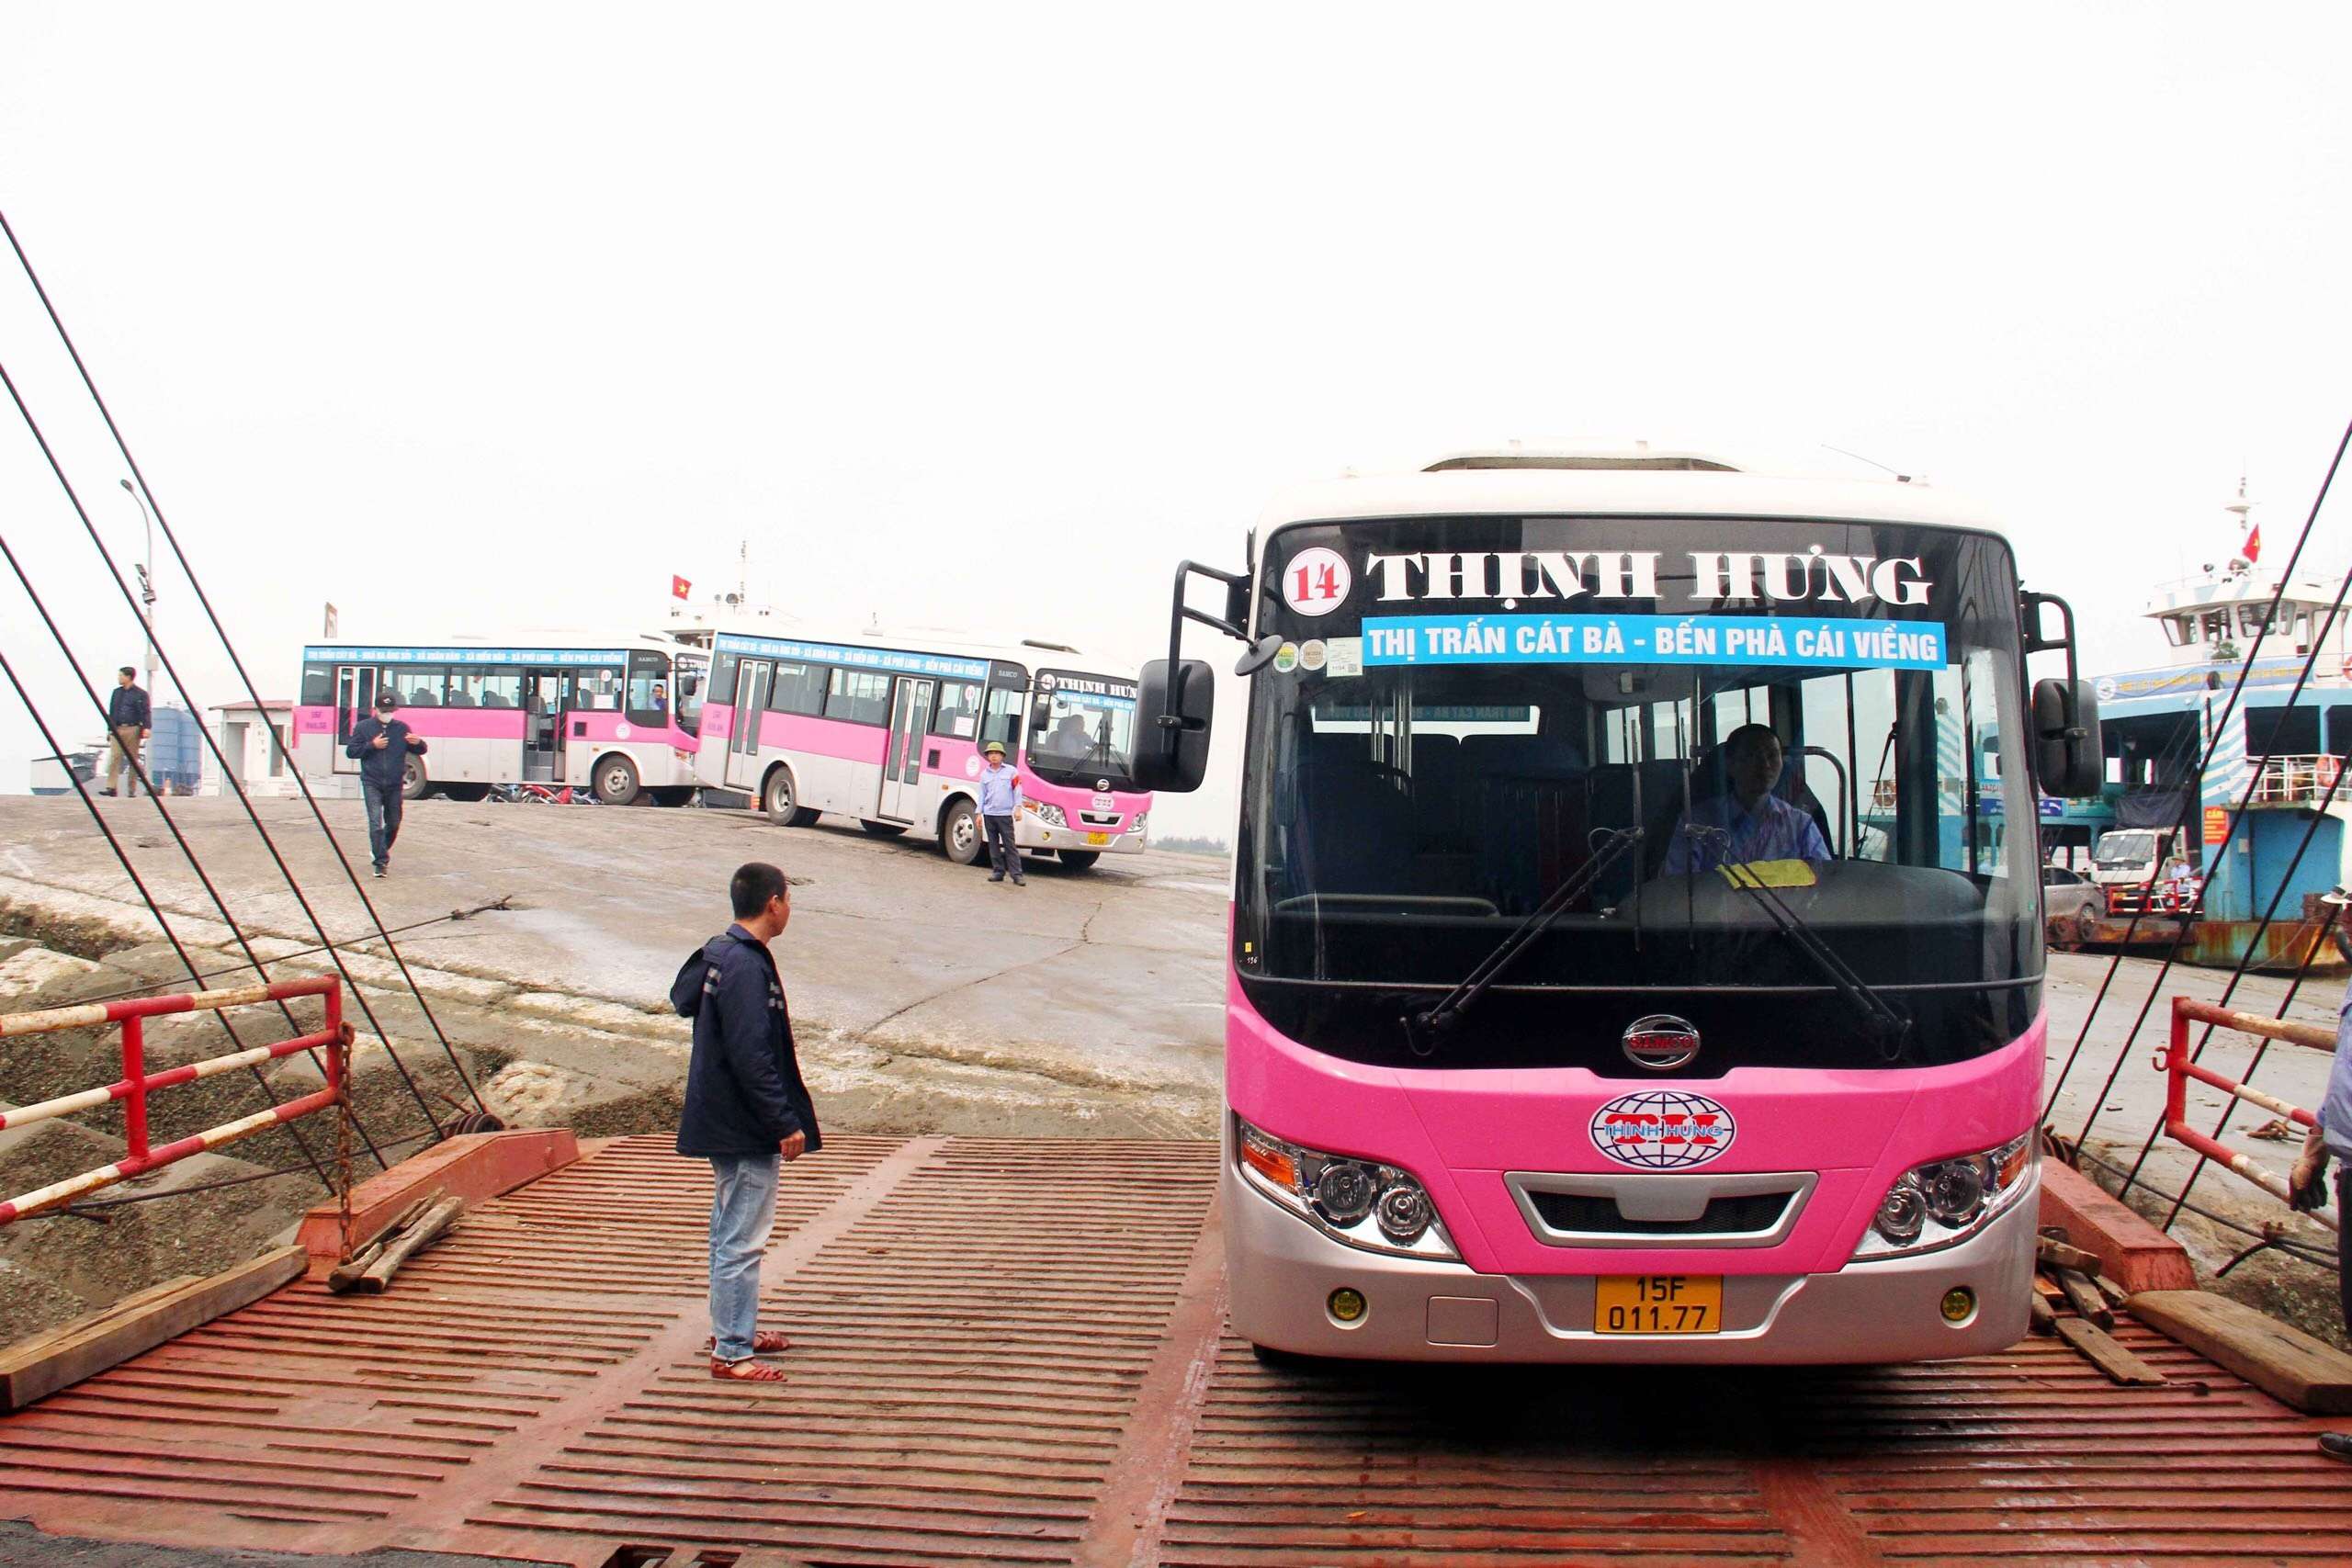 tuyến xe bus số 14 xuất phát từ bến phà Cái Viềng - xã Phù Long - xã Hiền Hào - xã Xuân Đám - ngã ba Áng Sỏi - thị trấn Cát Bà